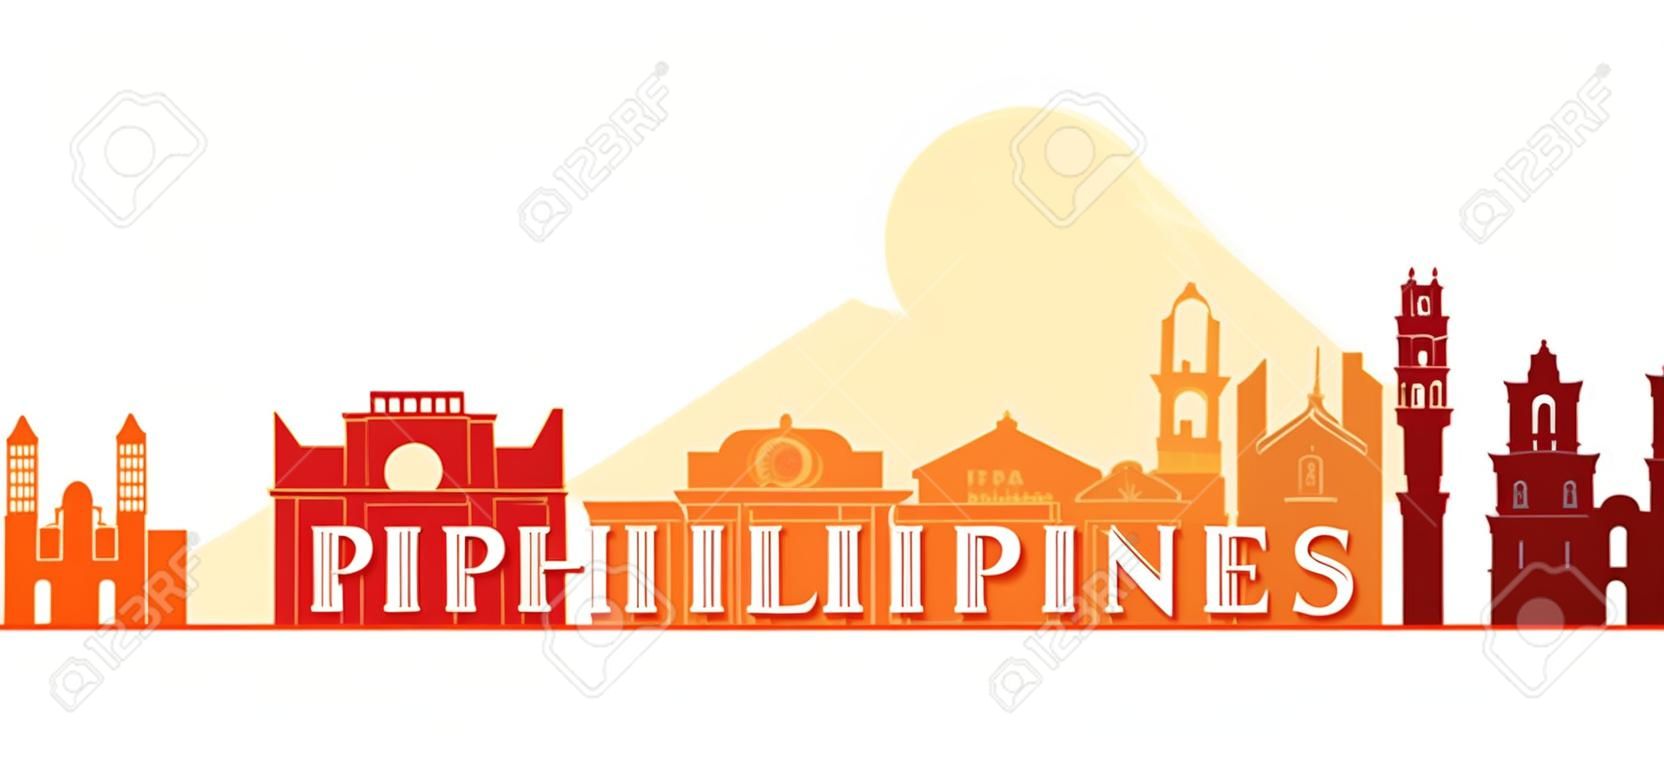 Filipinas Arquitectura Señales Horizonte, Forma, Paisaje Urbano, Viajes y Atracción turística